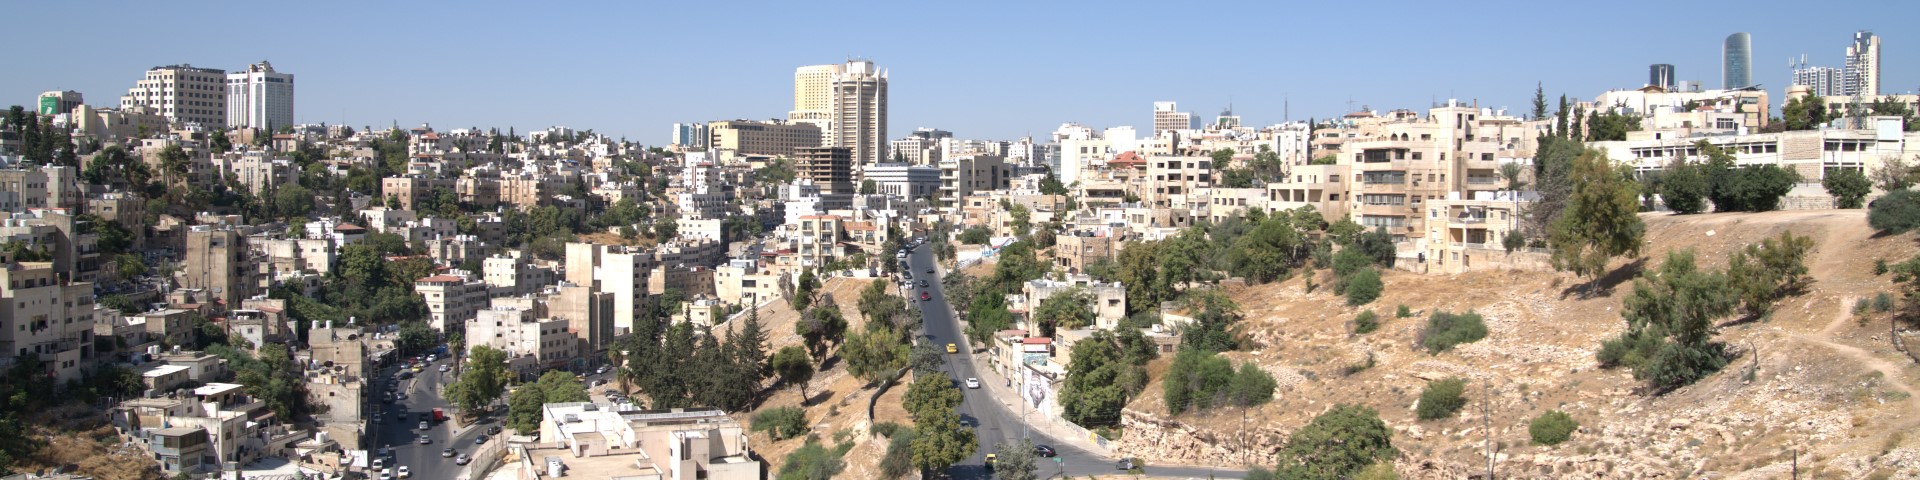 Ein Panoramablick auf eine Stadt von einer Anhebung aus fotografiert.